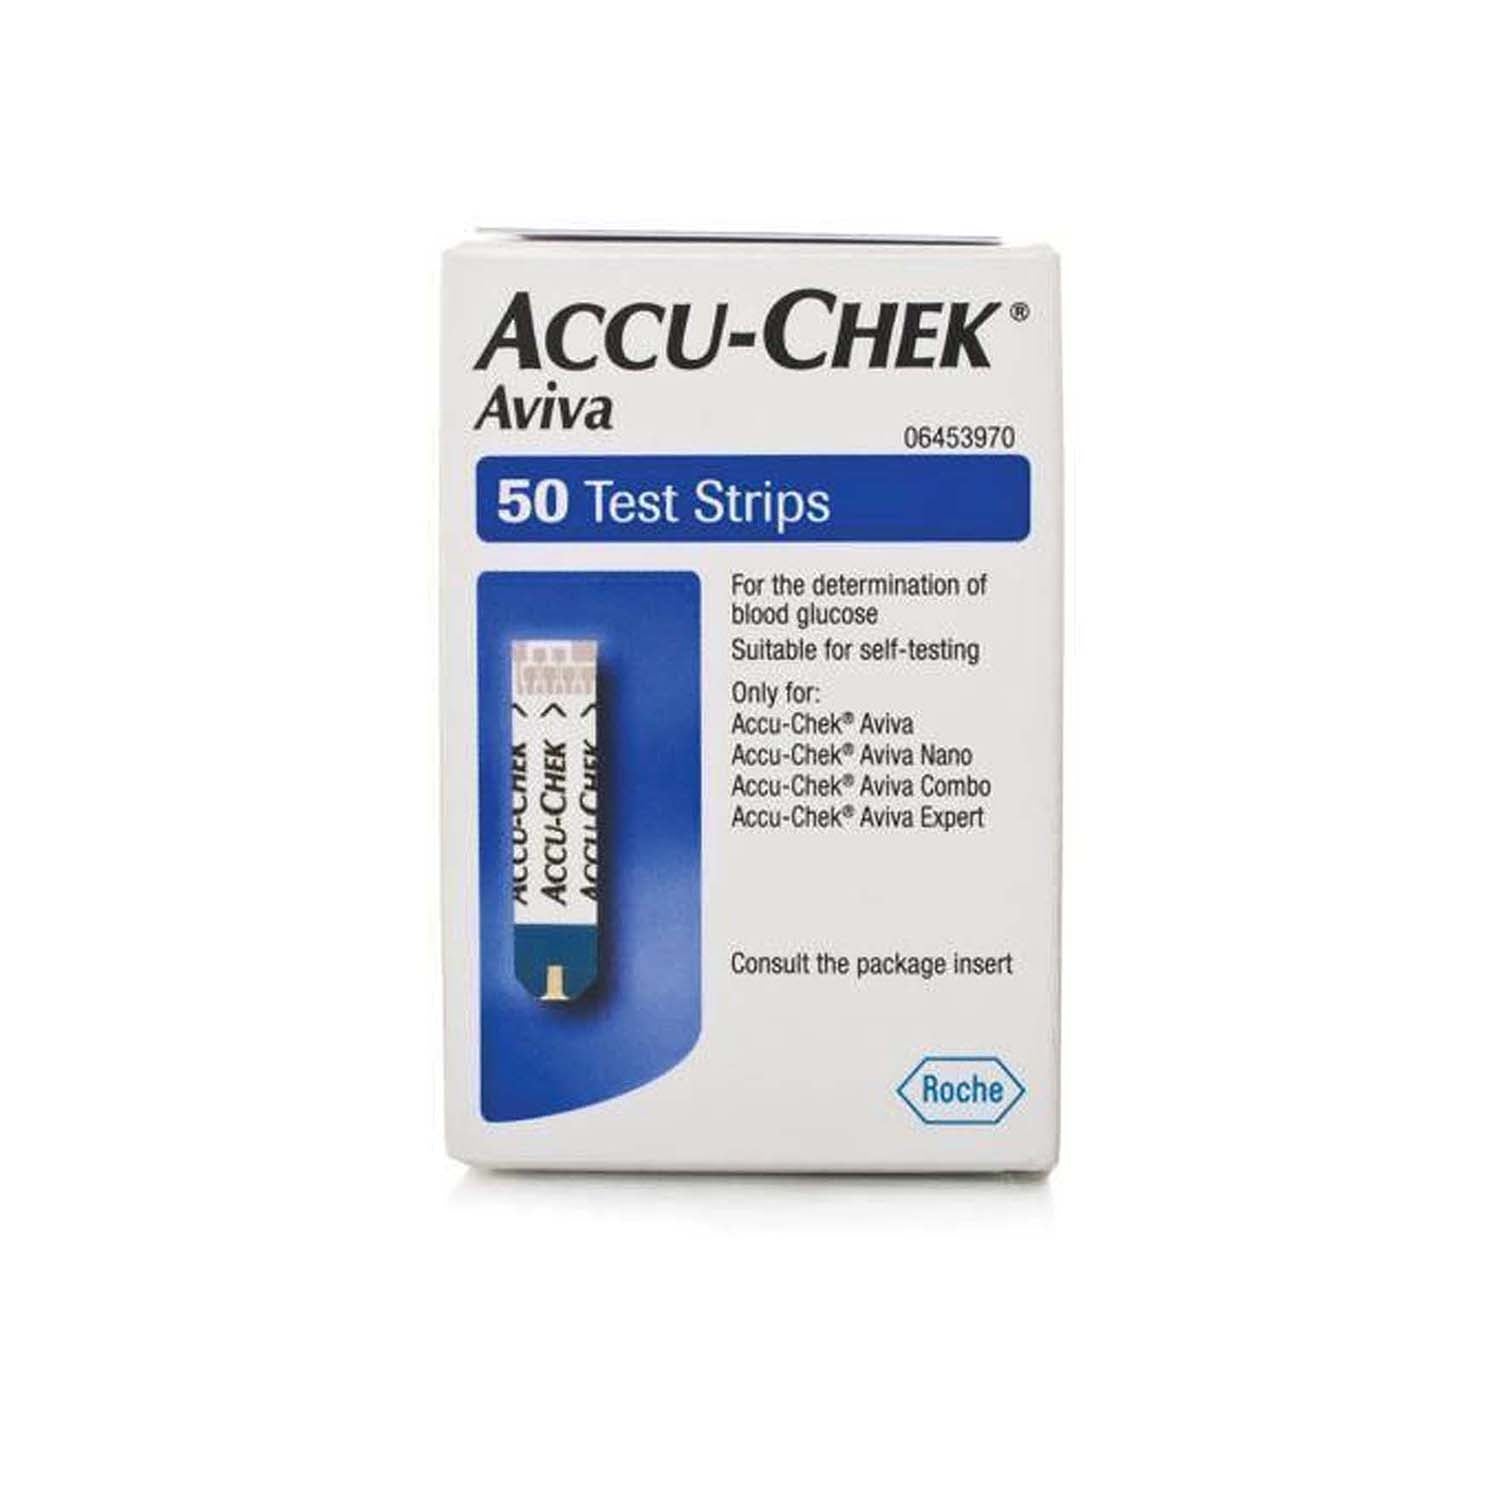 Accu-Chek Aviva | Pack of 50 Test Strips